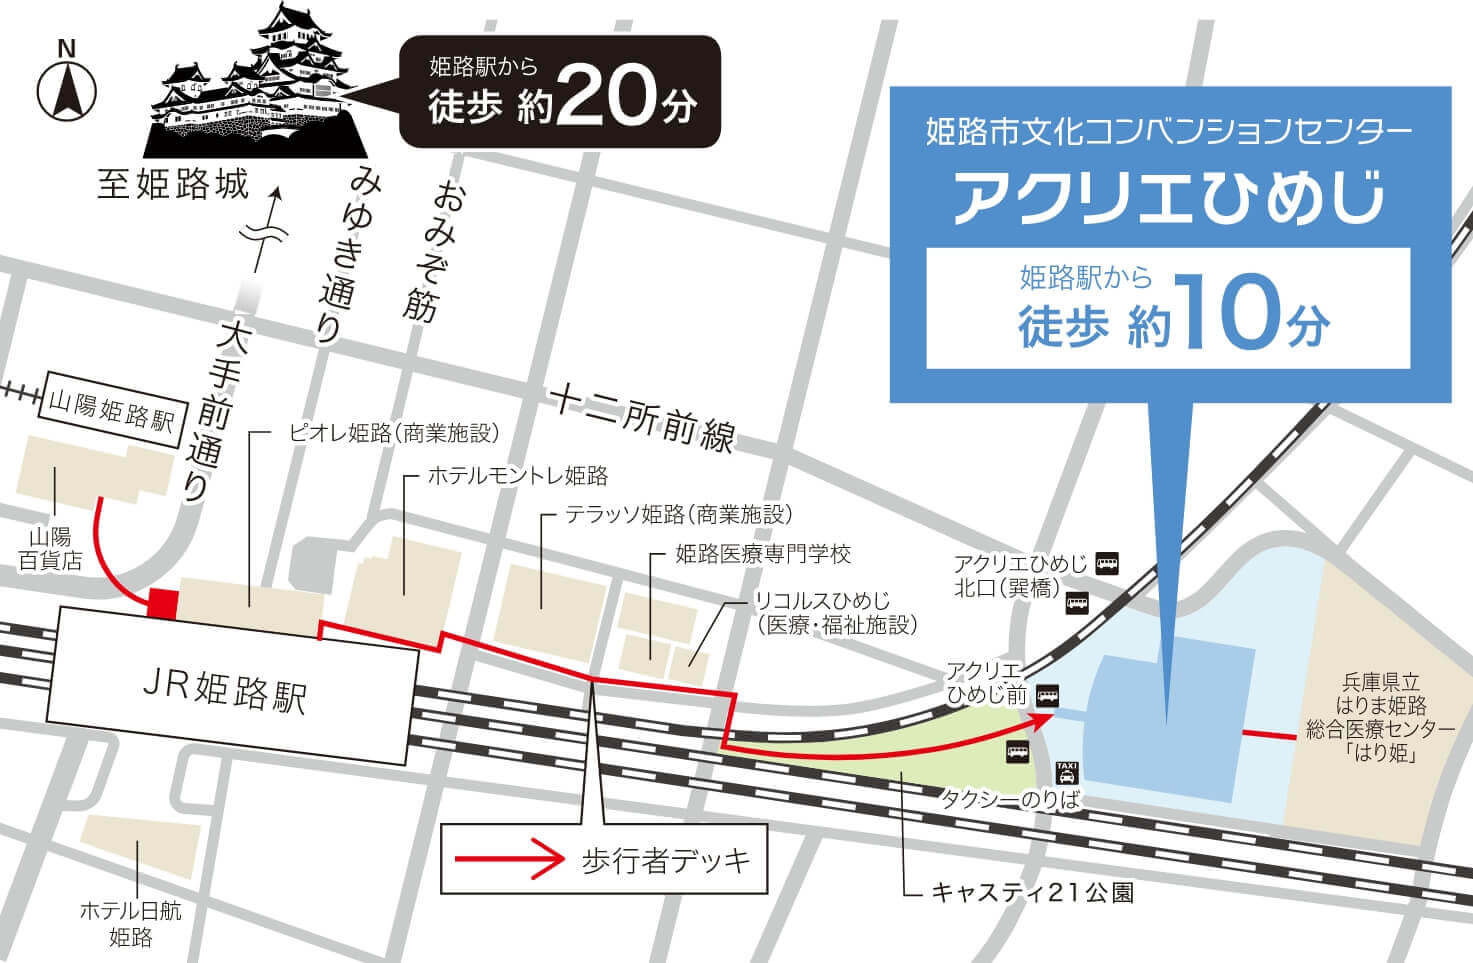 姫路市文化コンベンションセンターアクリエひめじまで姫路駅から徒歩10分、姫路城から徒歩20分